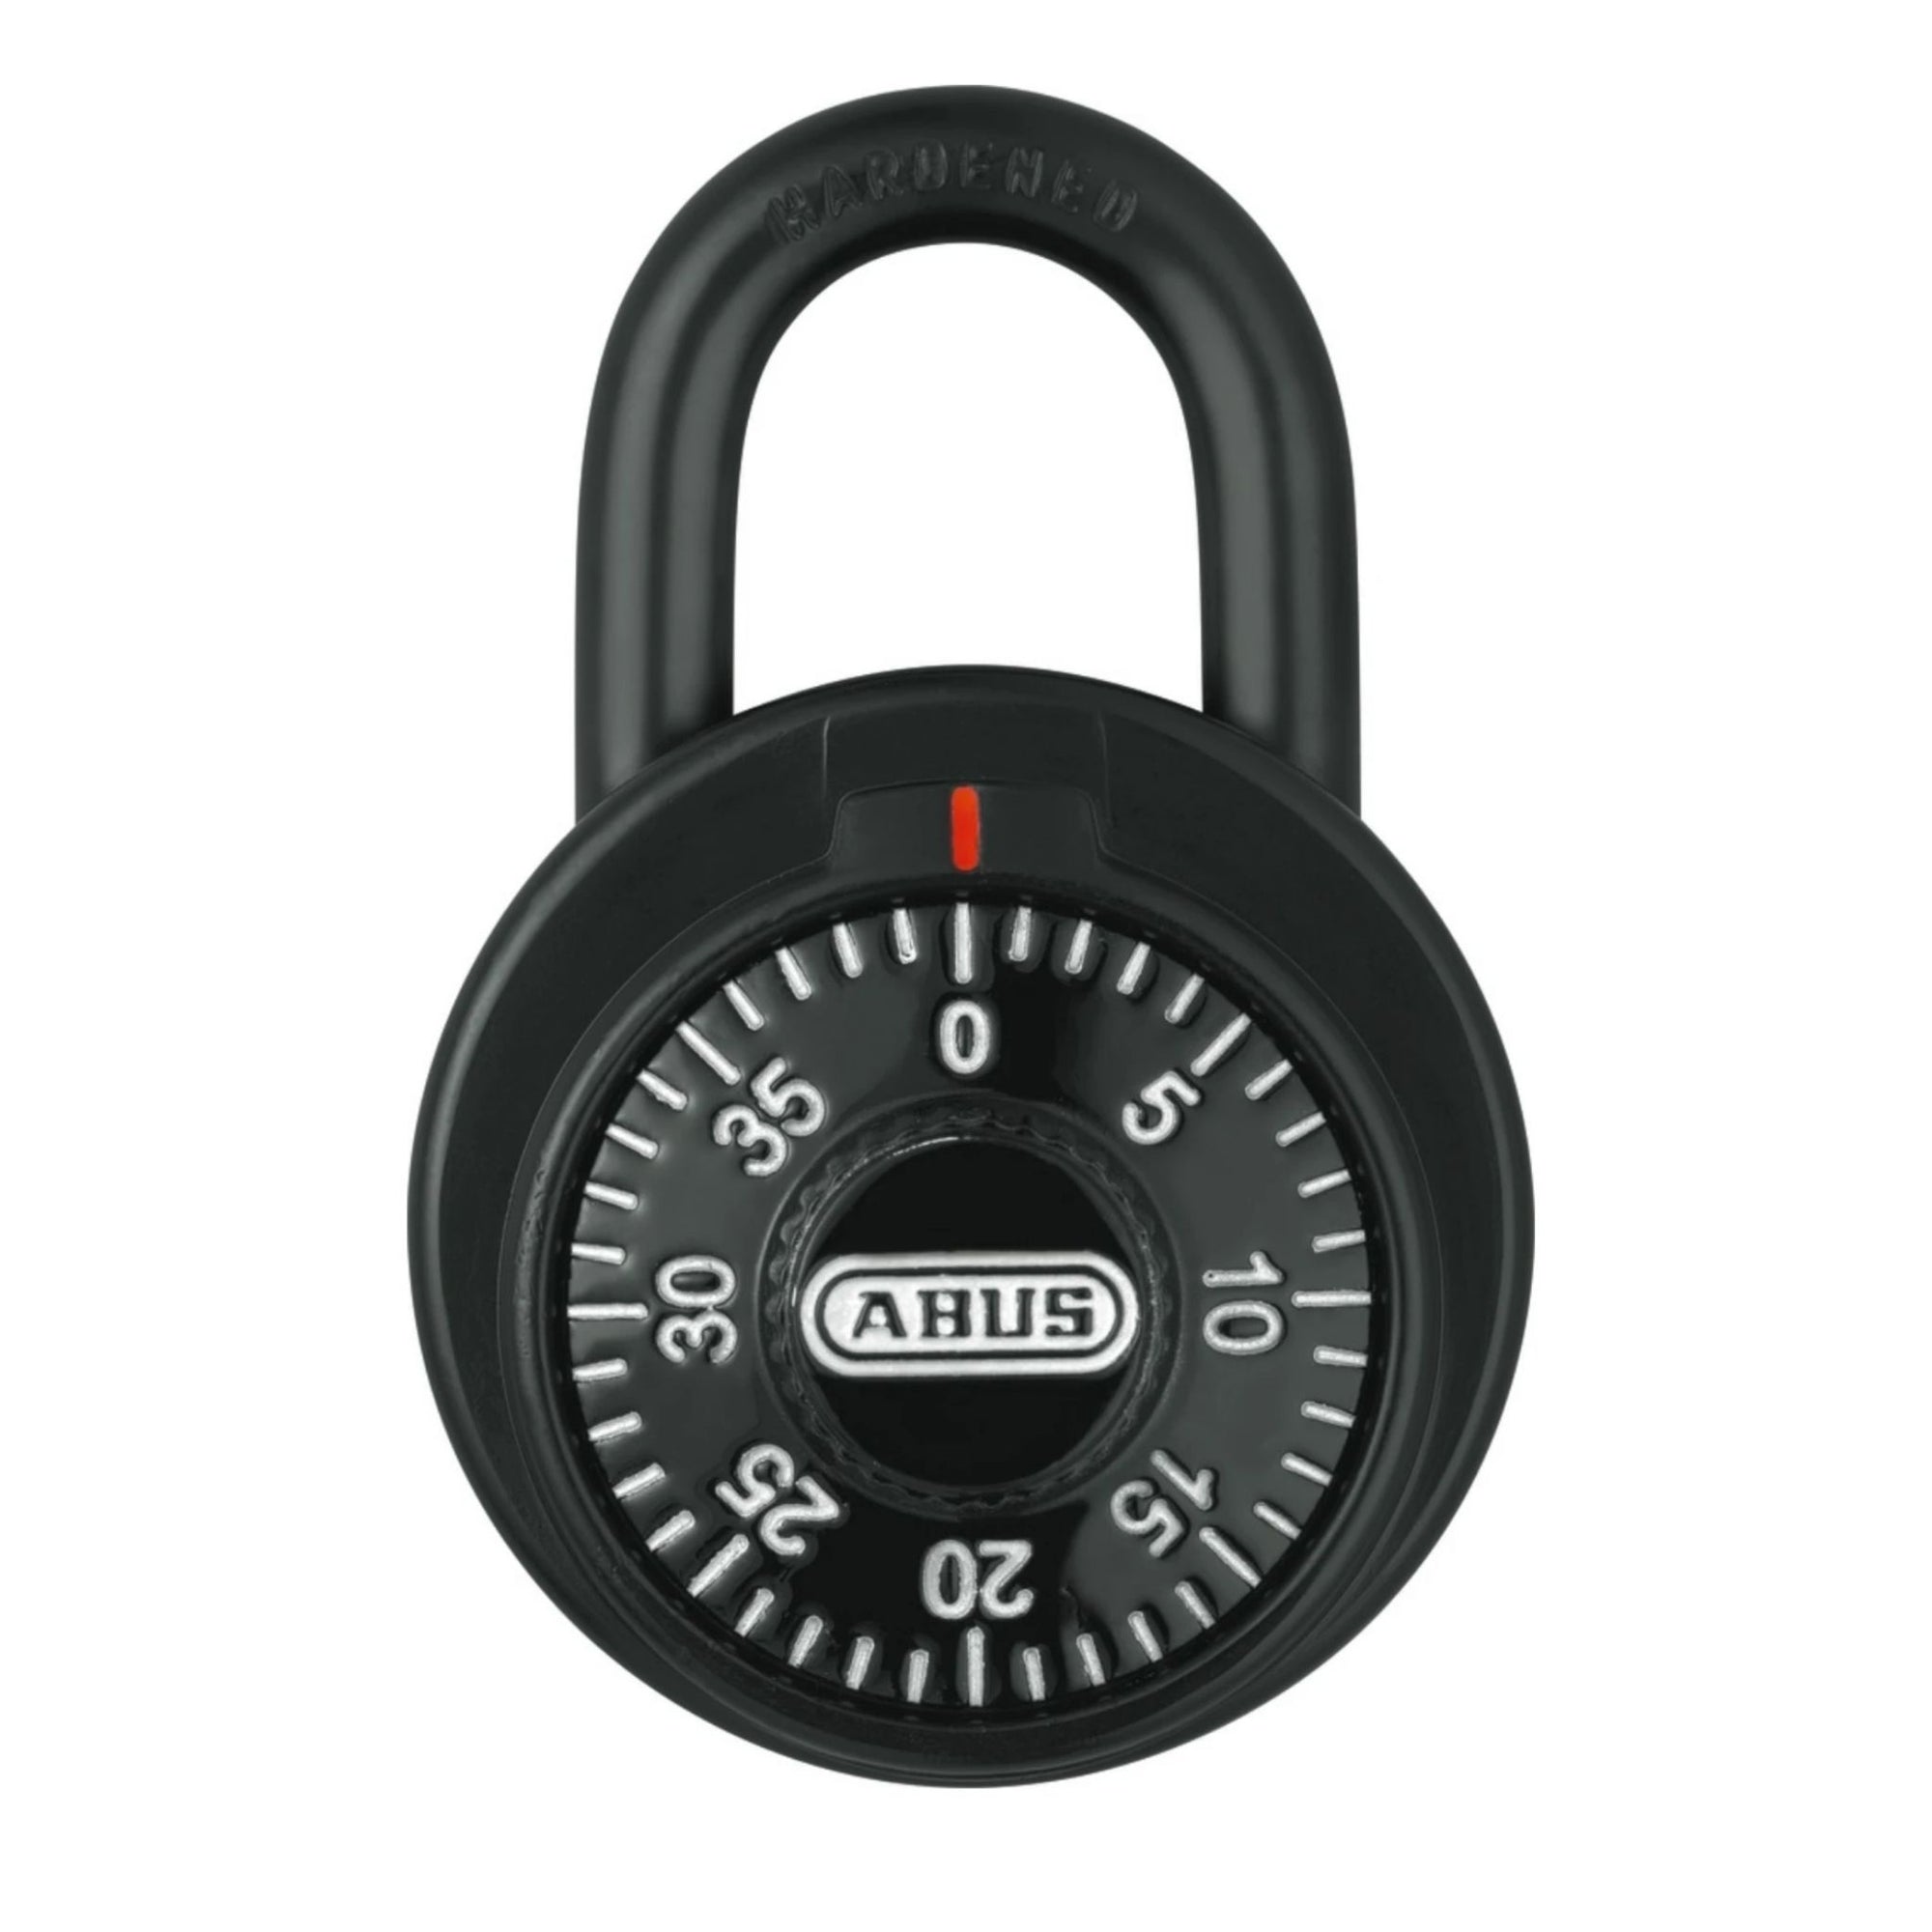 Abus 78/50 KC KA 507A Black Locker Padlock with Key Control Matched to Key Number KA507A - The Lock Source